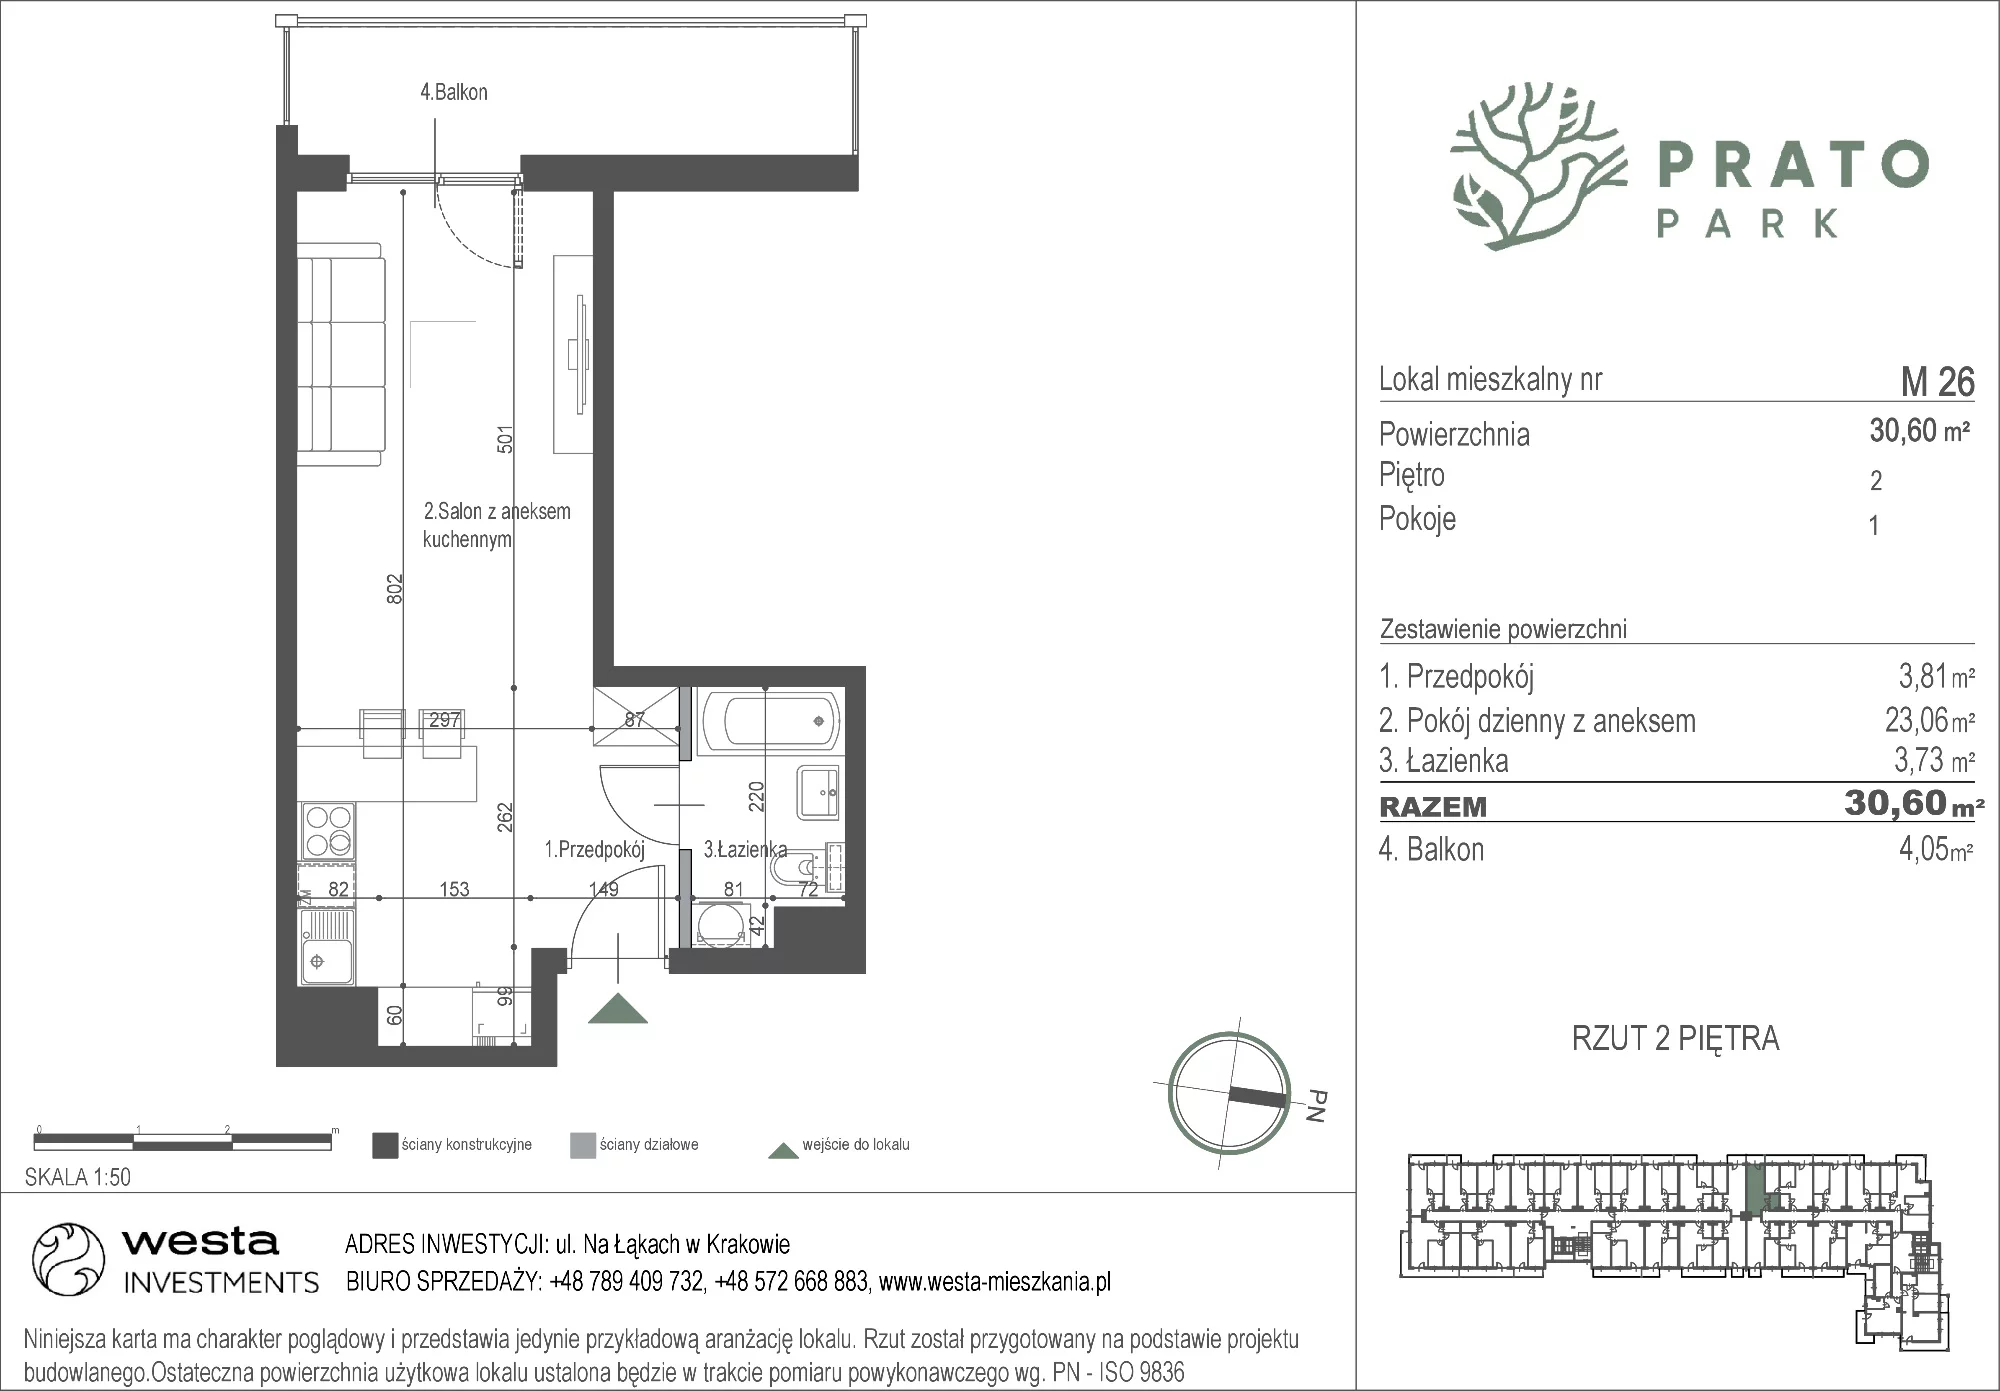 Mieszkanie 30,60 m², piętro 2, oferta nr M26, Prato Park, Kraków, Czyżyny, ul. Na Łąkach